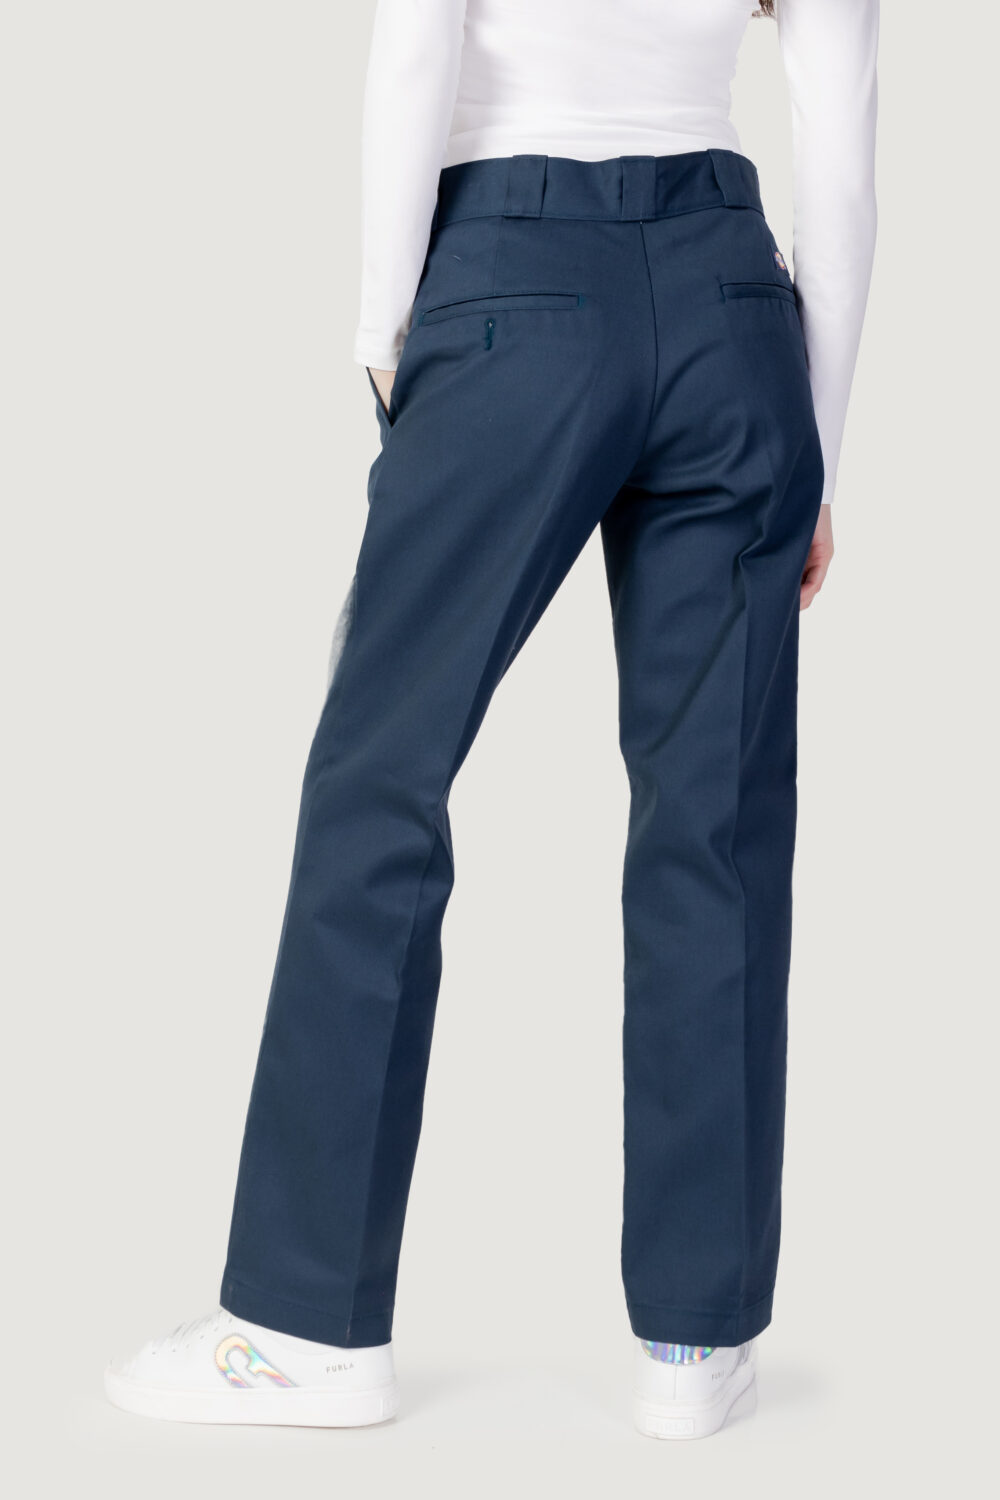 Pantaloni regular Dickies 874 work rec Blu marine - Foto 2